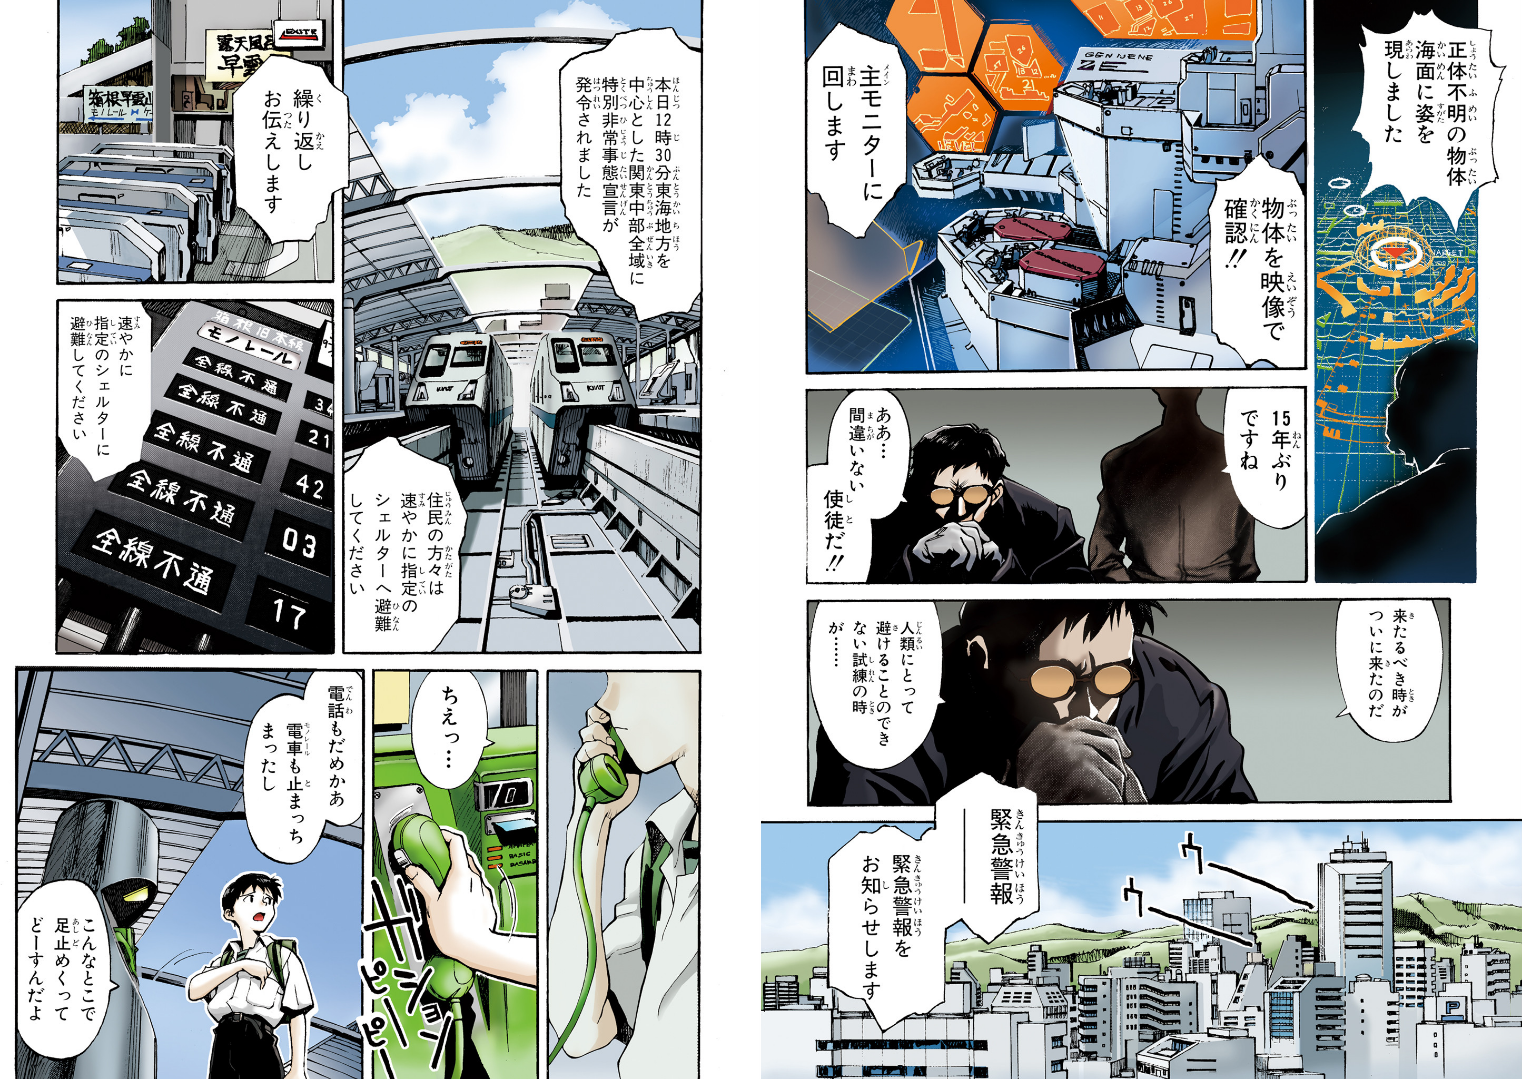 Gainax releases Sadamoto's Evangelion manga in full color.